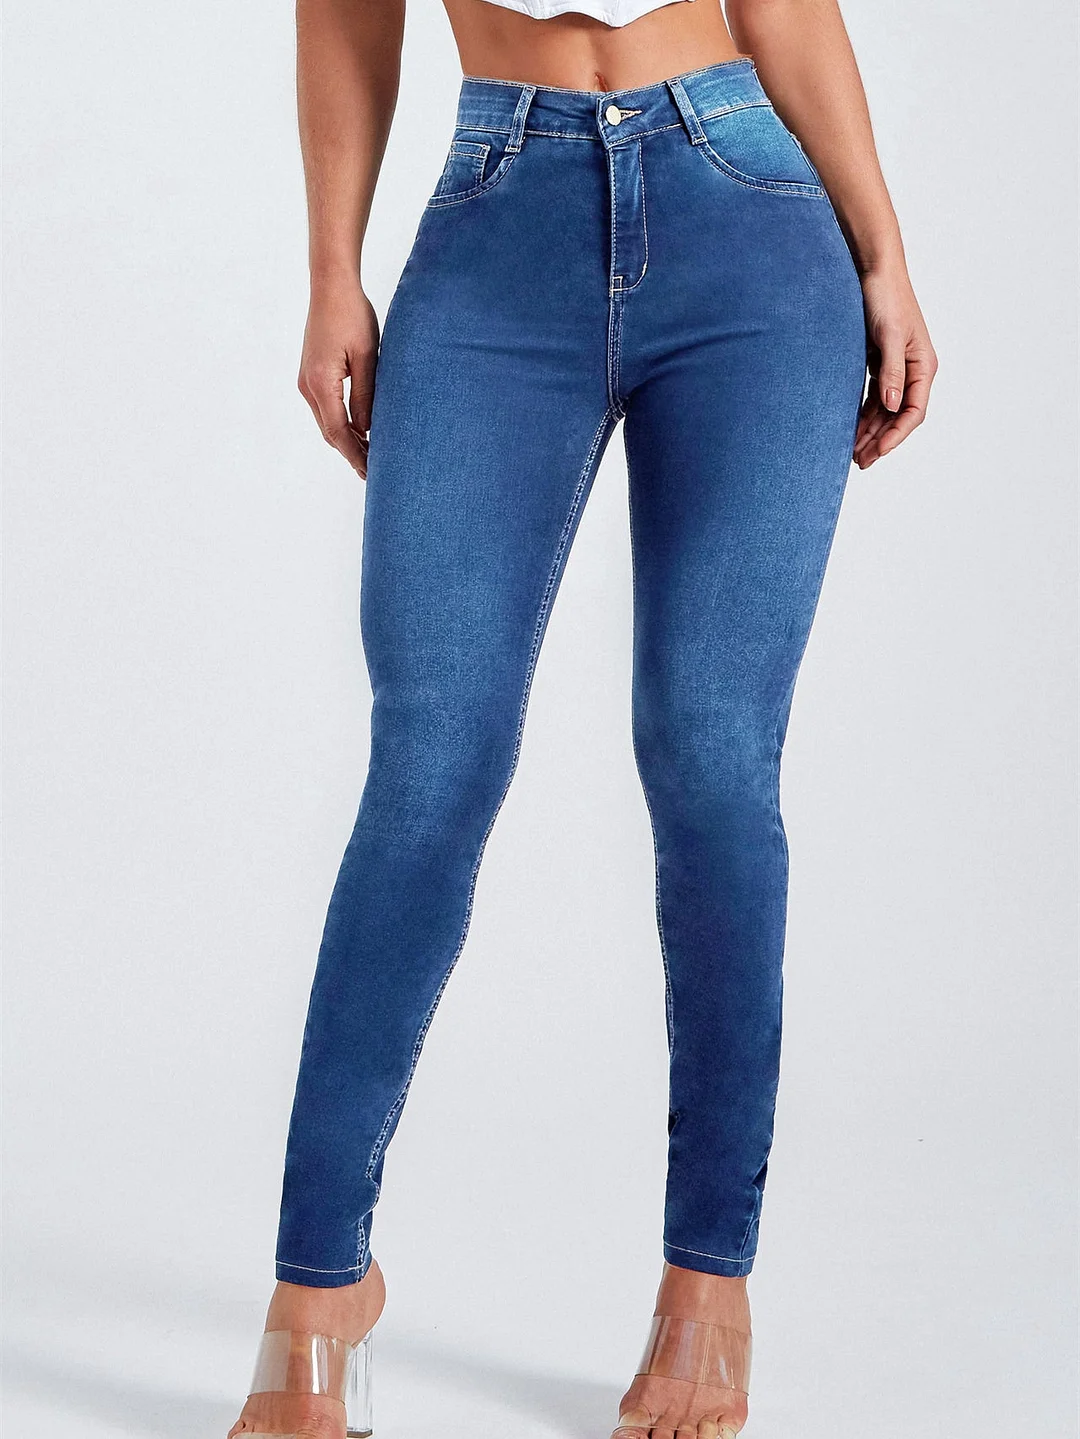 Women plus size clothing Women's Stretch Skinny Zipper Fly Jeans Pants-Nordswear